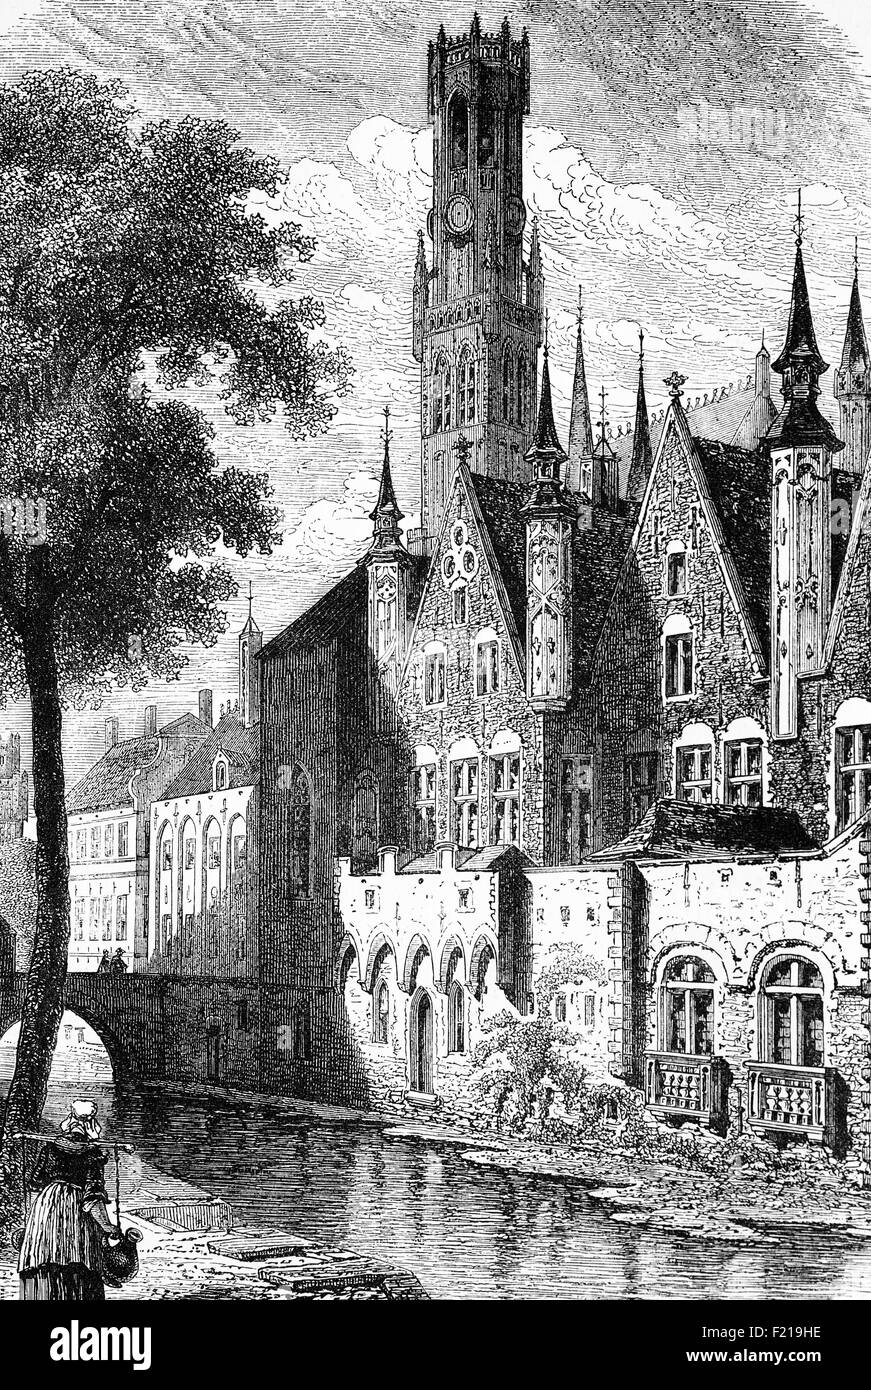 Il Palazzo dei Franchi a Bruges, capitale e la più grande città della provincia delle Fiandre Occidentali nella regione fiamminga del Belgio. Il campanile di Bruges, un campanile medievale (visto dietro), era un campanile che ospitava un tesoro e gli archivi comunali. È stato anche un posto di osservazione per individuare incendi e altri pericoli. Foto Stock